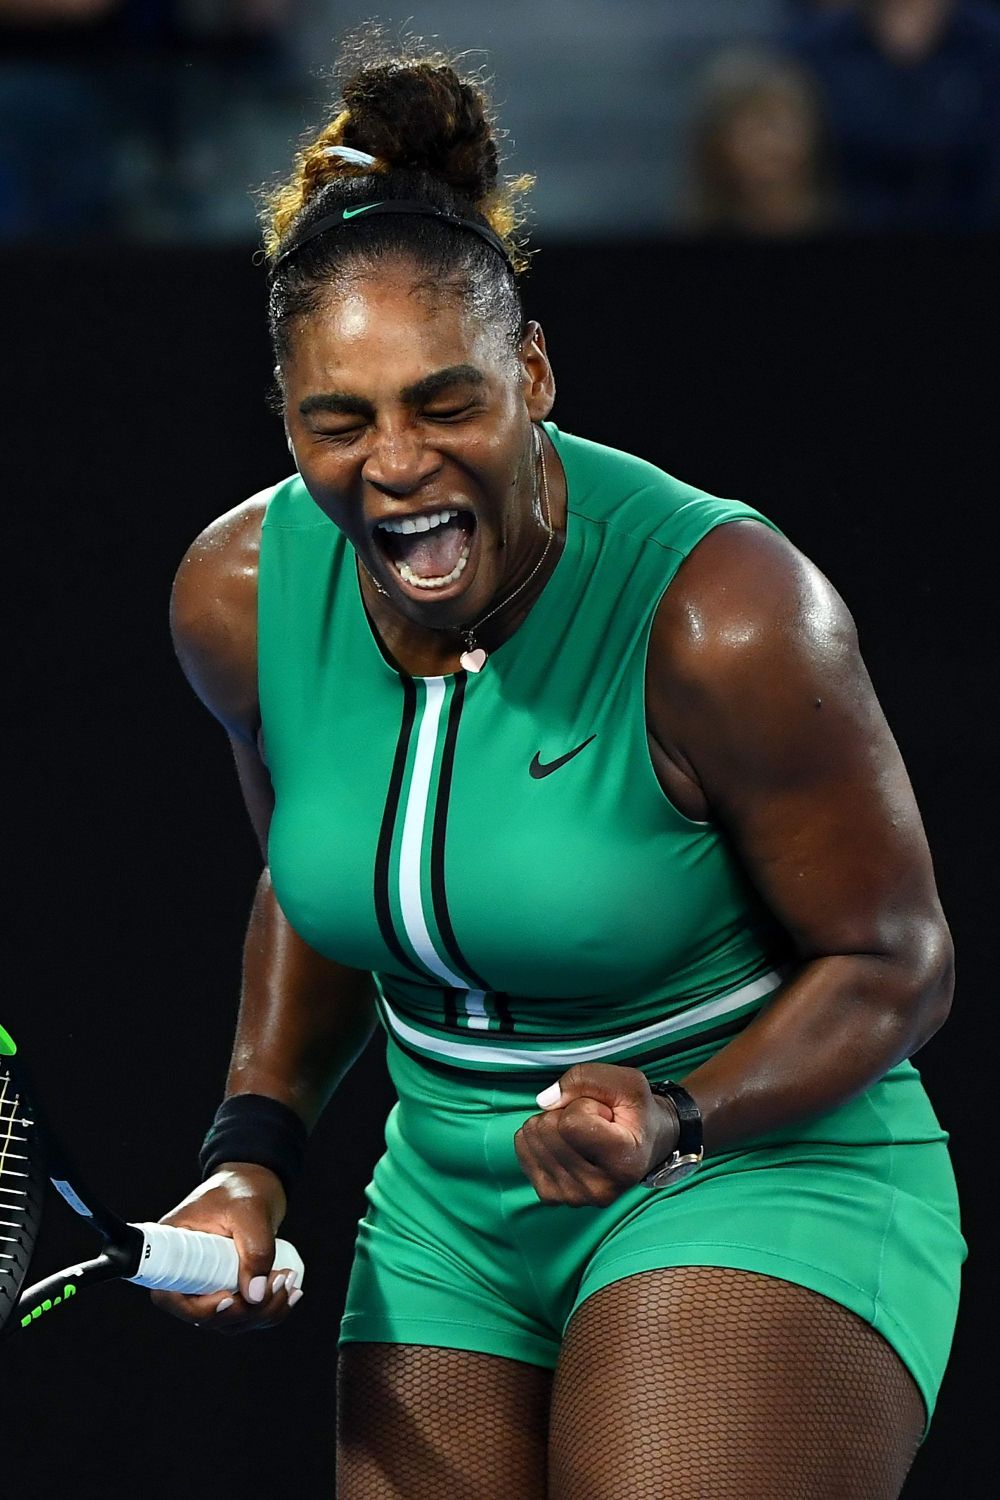 "Imaginea asta spune TOTUL!" Ce gest FANTASTIC a facut Simona Halep imediat dupa infrangerea cu Serena Williams. FOTO_13